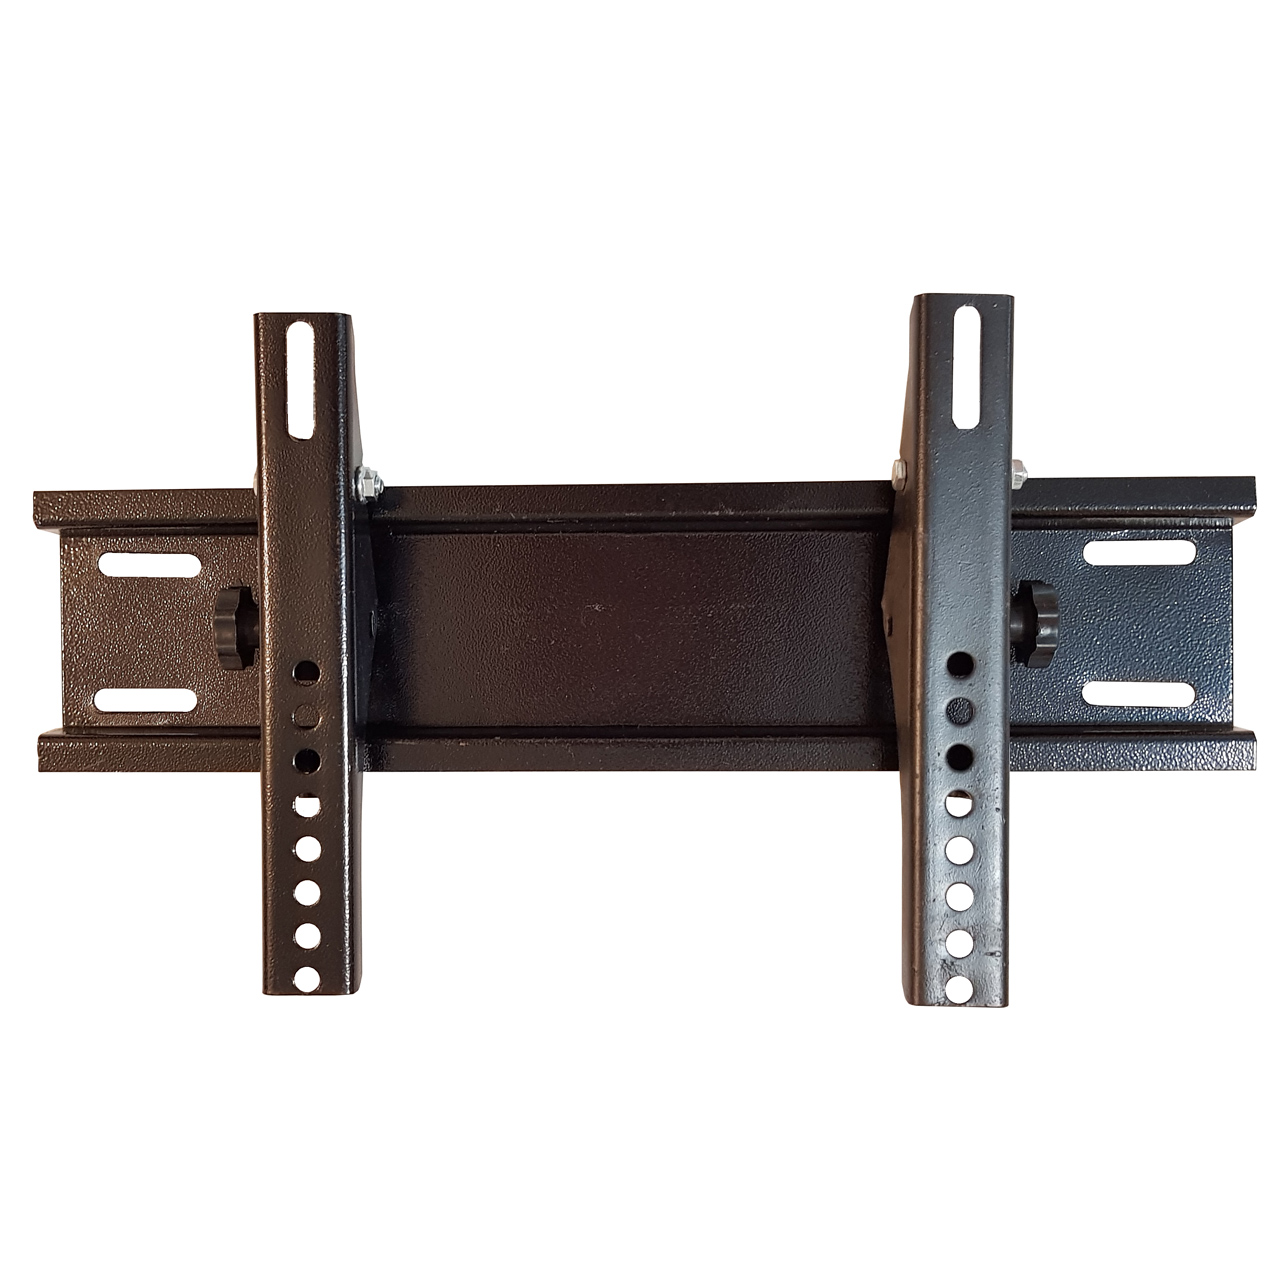 پایه دیواری ال سی دی برند مدلJLE 301F مناسب برای تلویزیون های 32 تا 46 اینچ